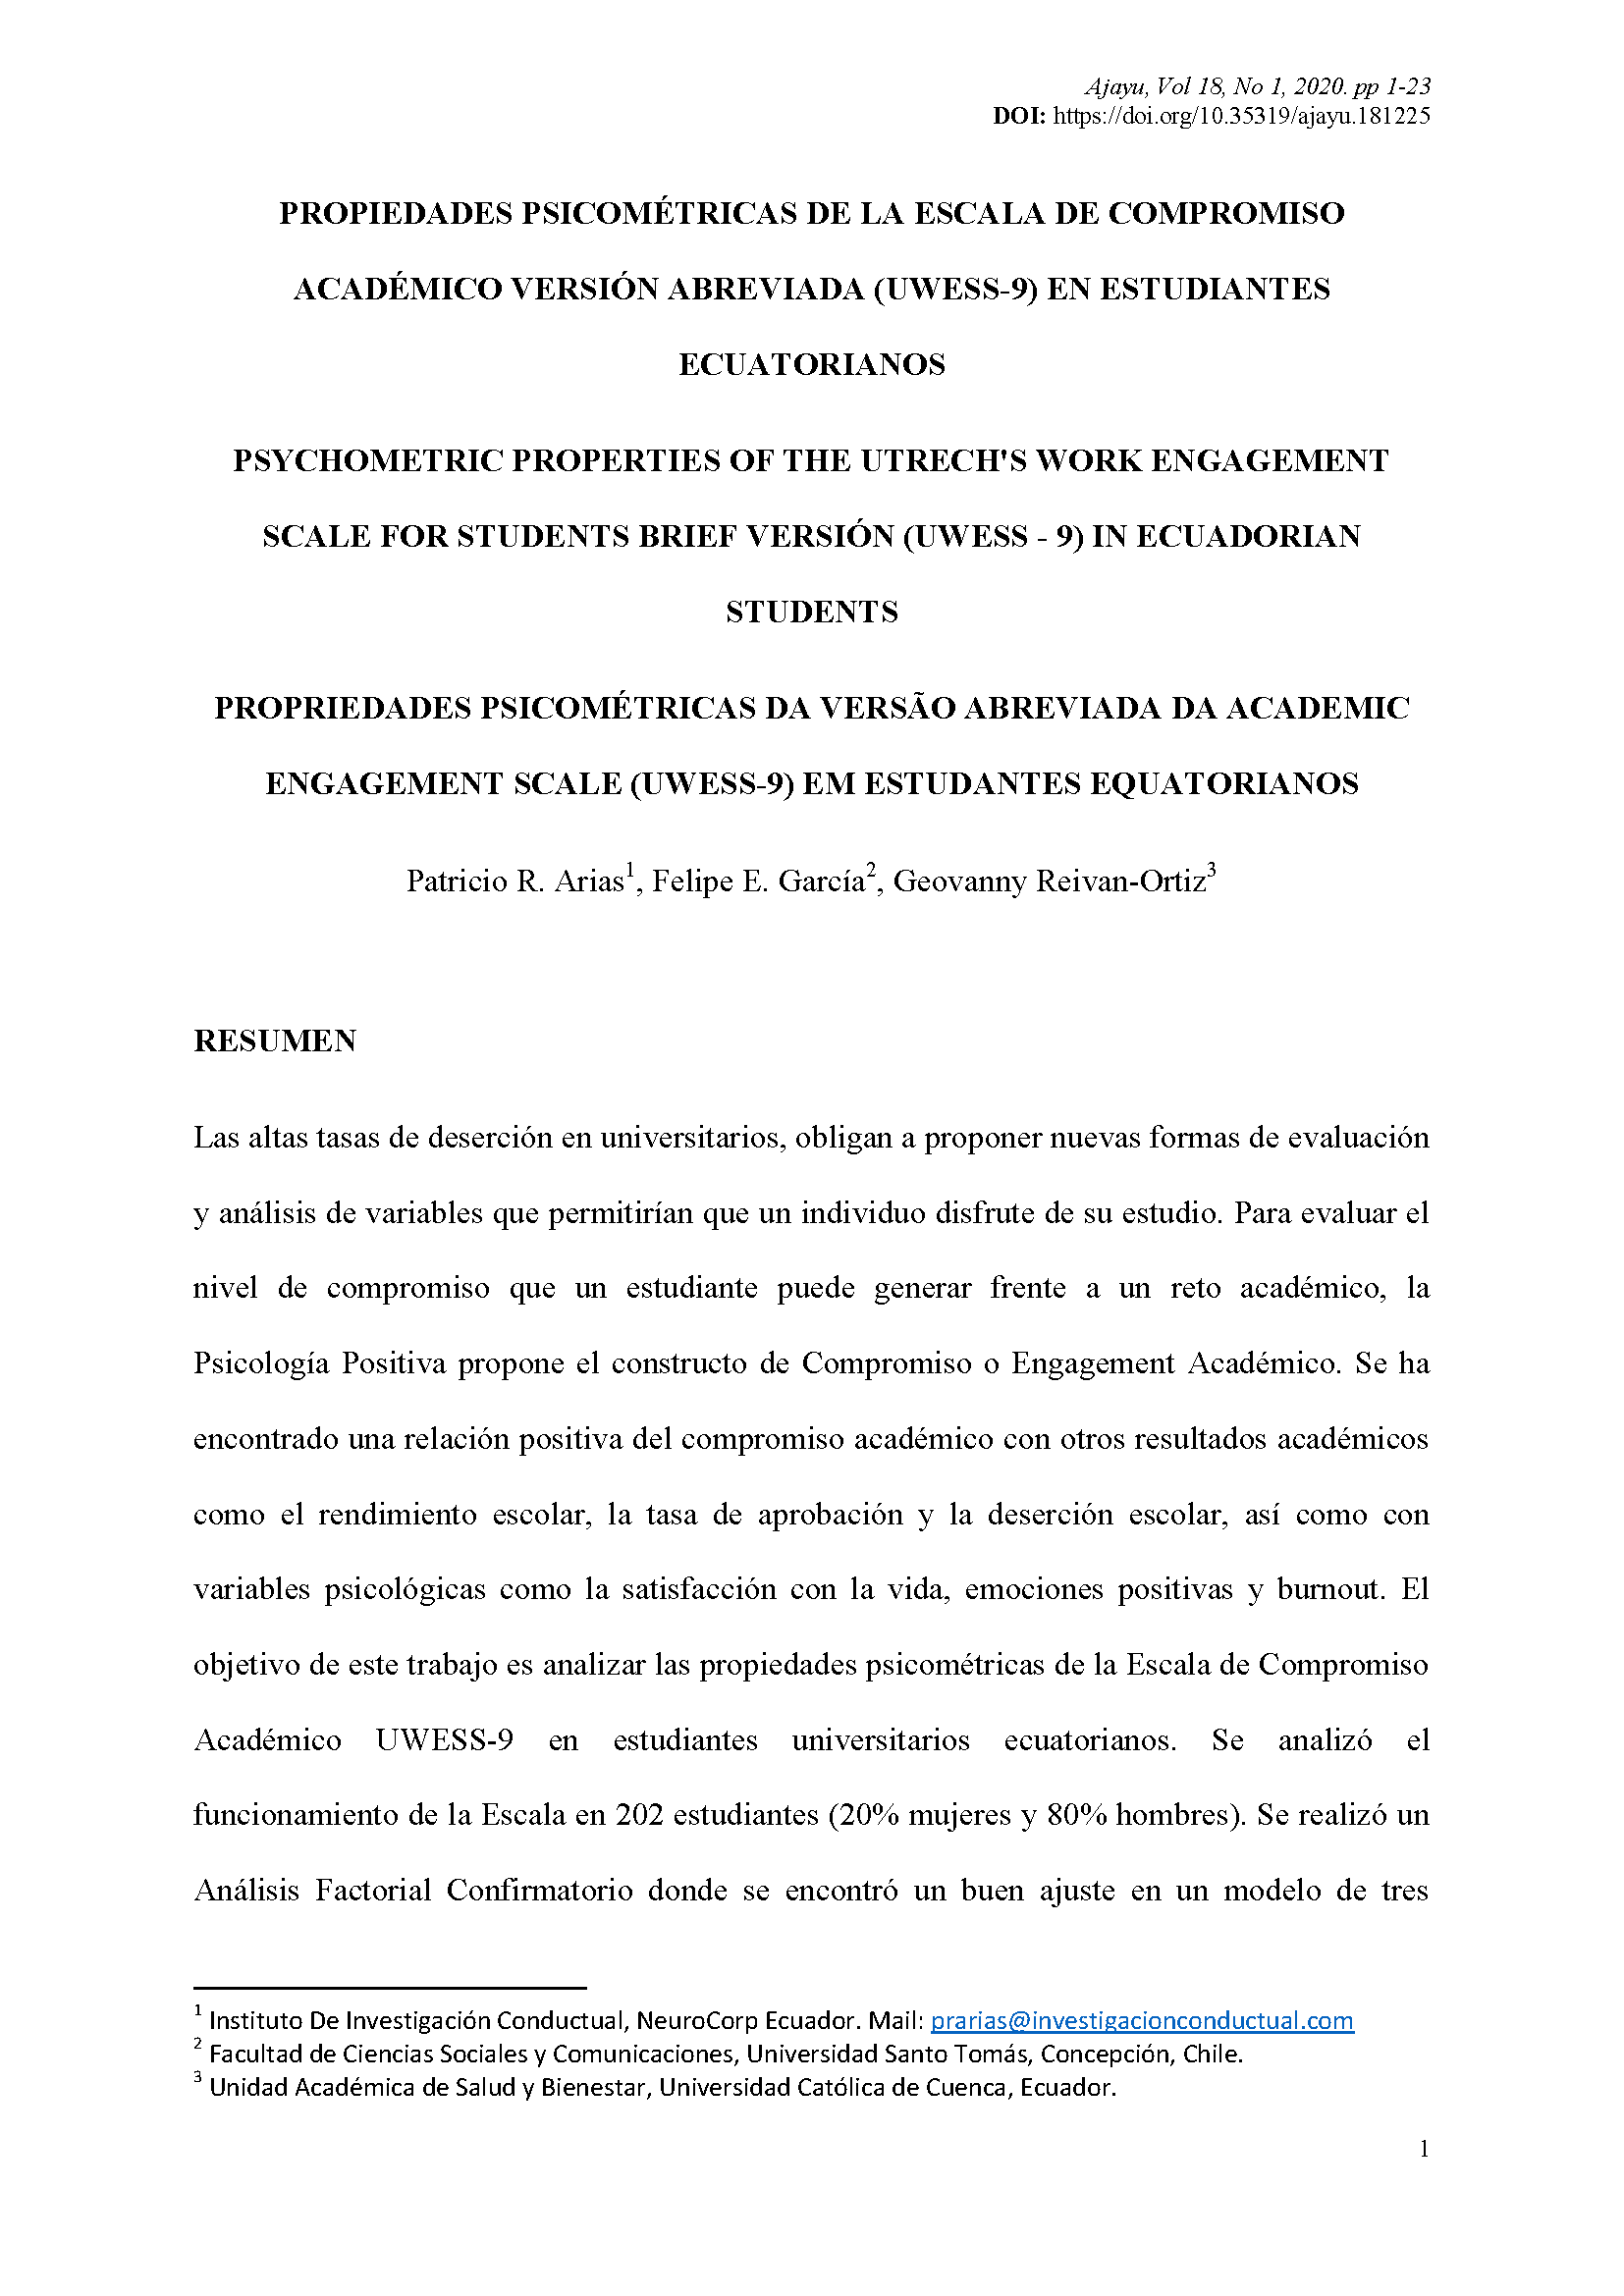 Propiedades psicométricas de la escala de compromiso académico versión abreviada (UWESS-9) en estudiantes ecuatorianos 